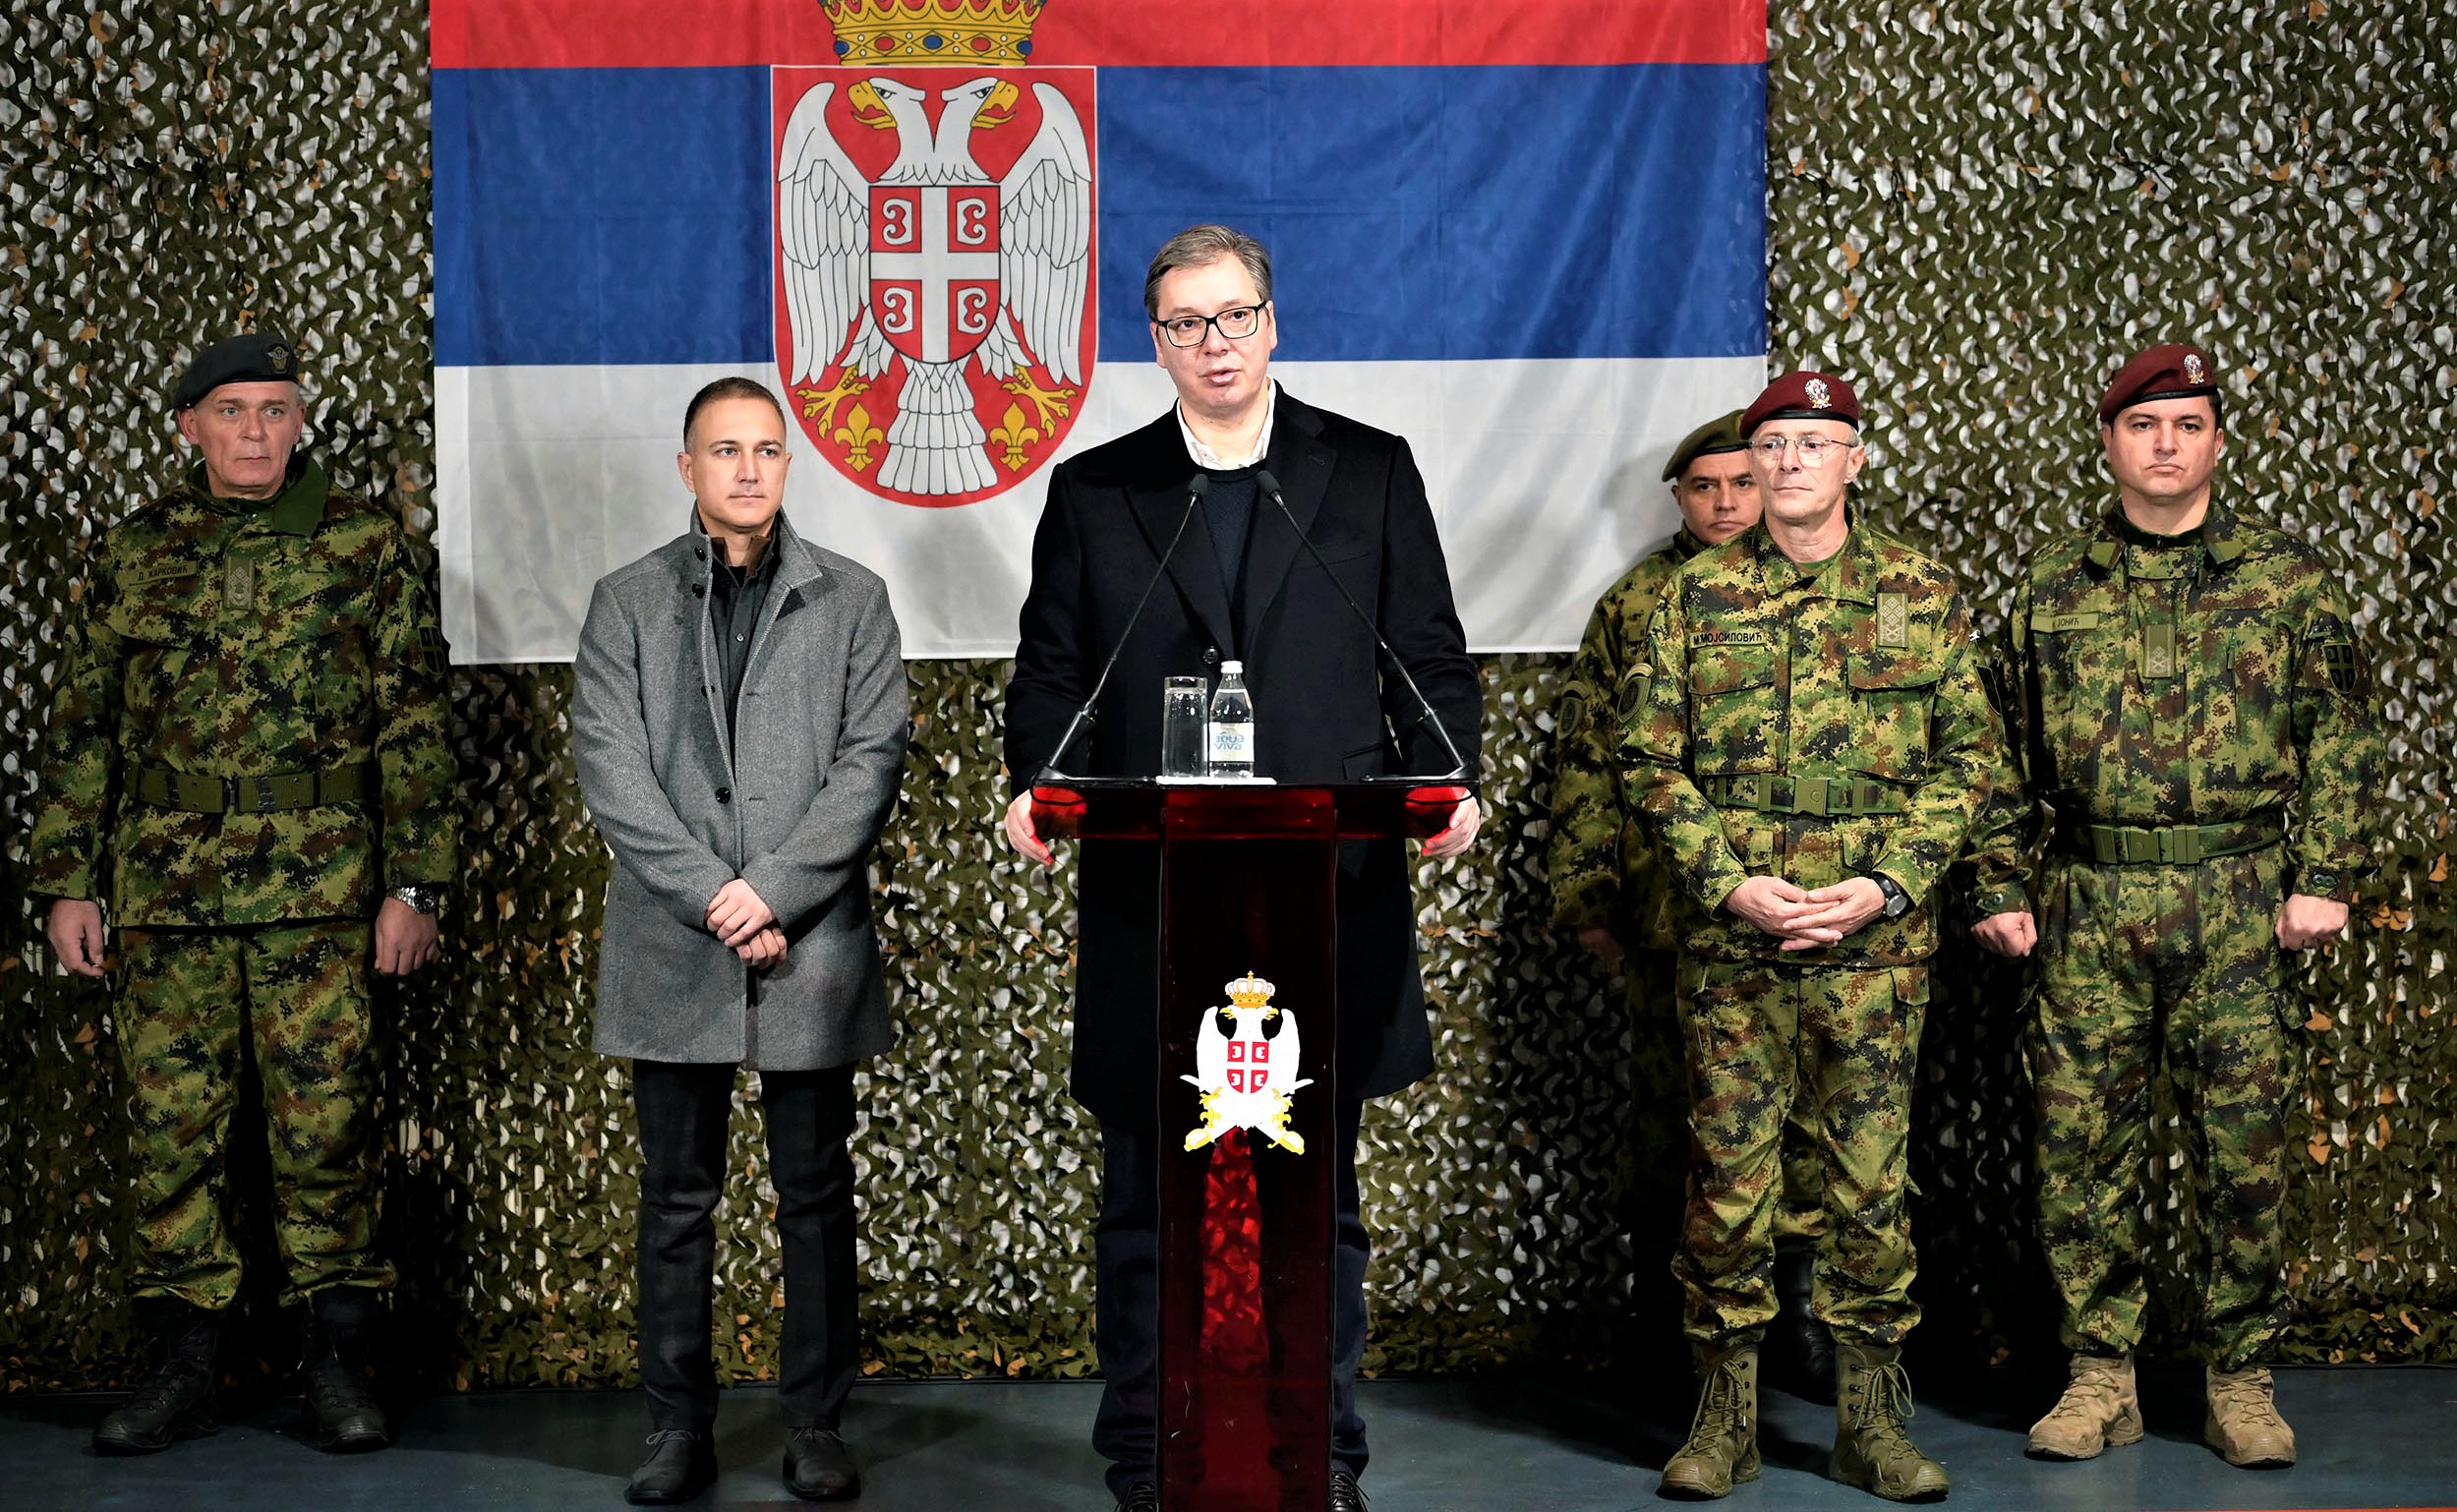 Συγκρούσεις δυνάμεων Σερβίας & Κοσσόβου – Συγκεντρώνεται σερβικός Στρατός – ΗΠΑ: «Δεν θα επέμβουμε» (upd 4)